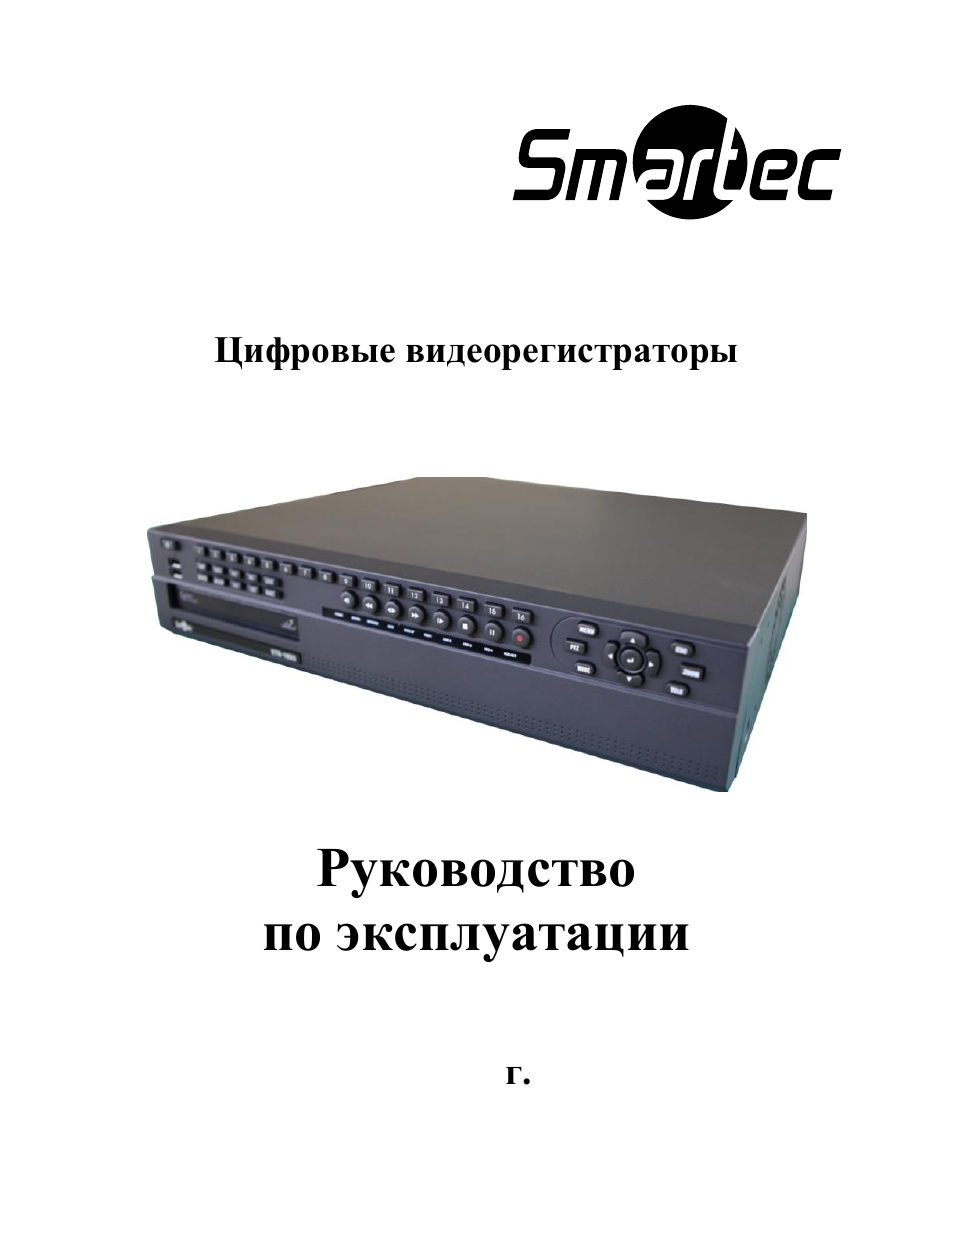 Видеорегистратор smartec str 104c инструкция